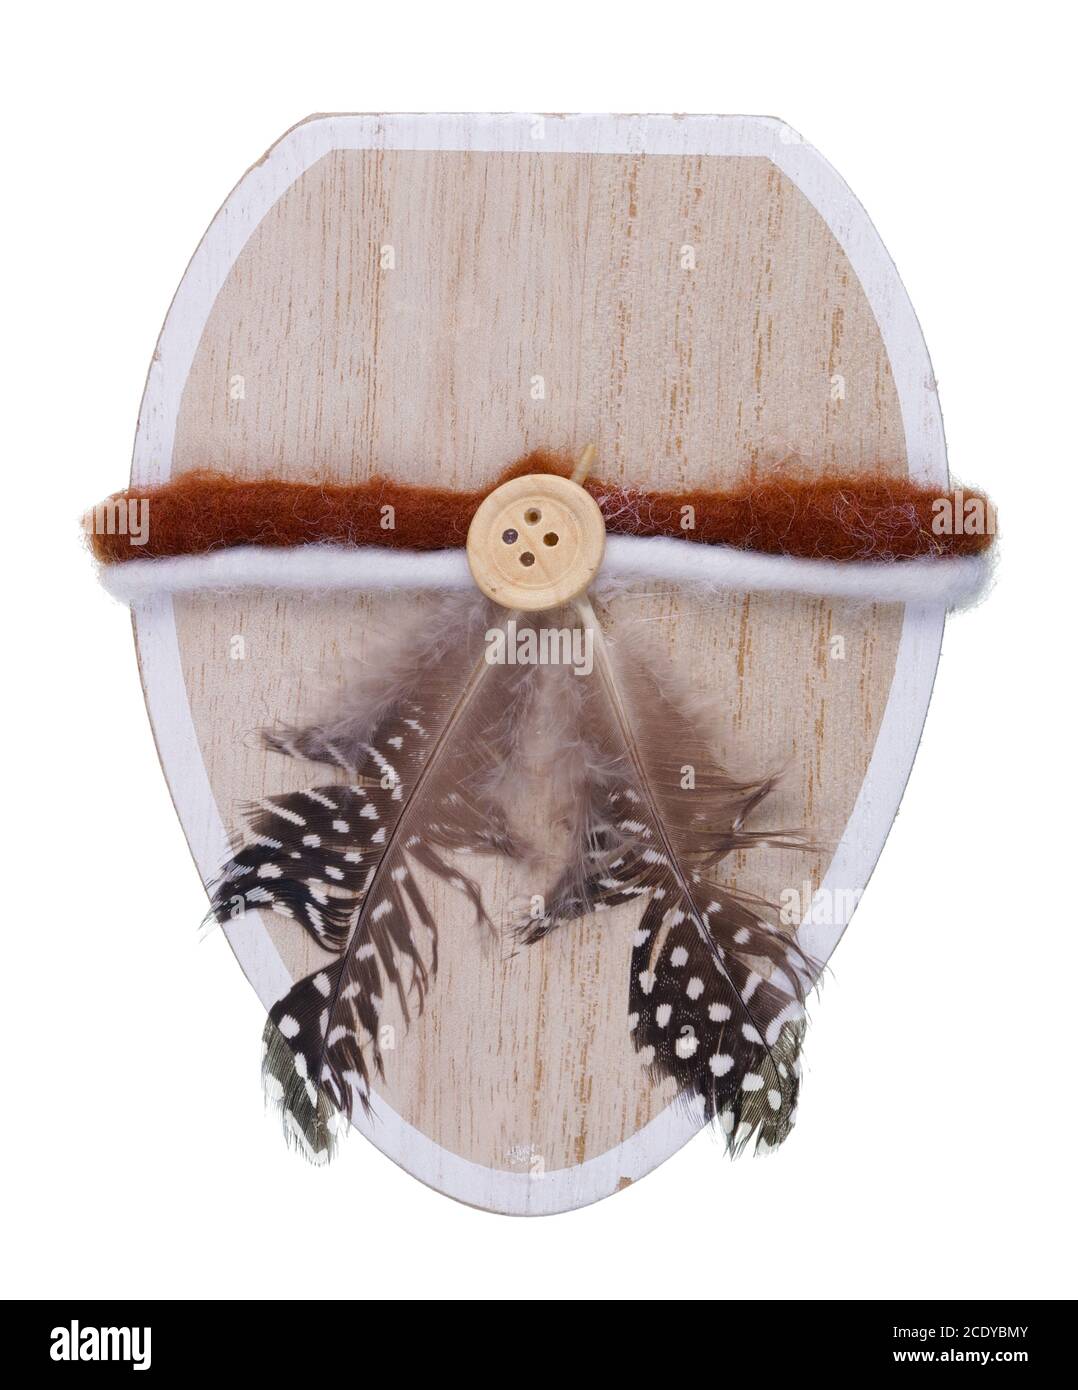 El corazón de madera está decorado con plumas de un pájaro del bosque, una cuerda y un botón aislado Foto de stock